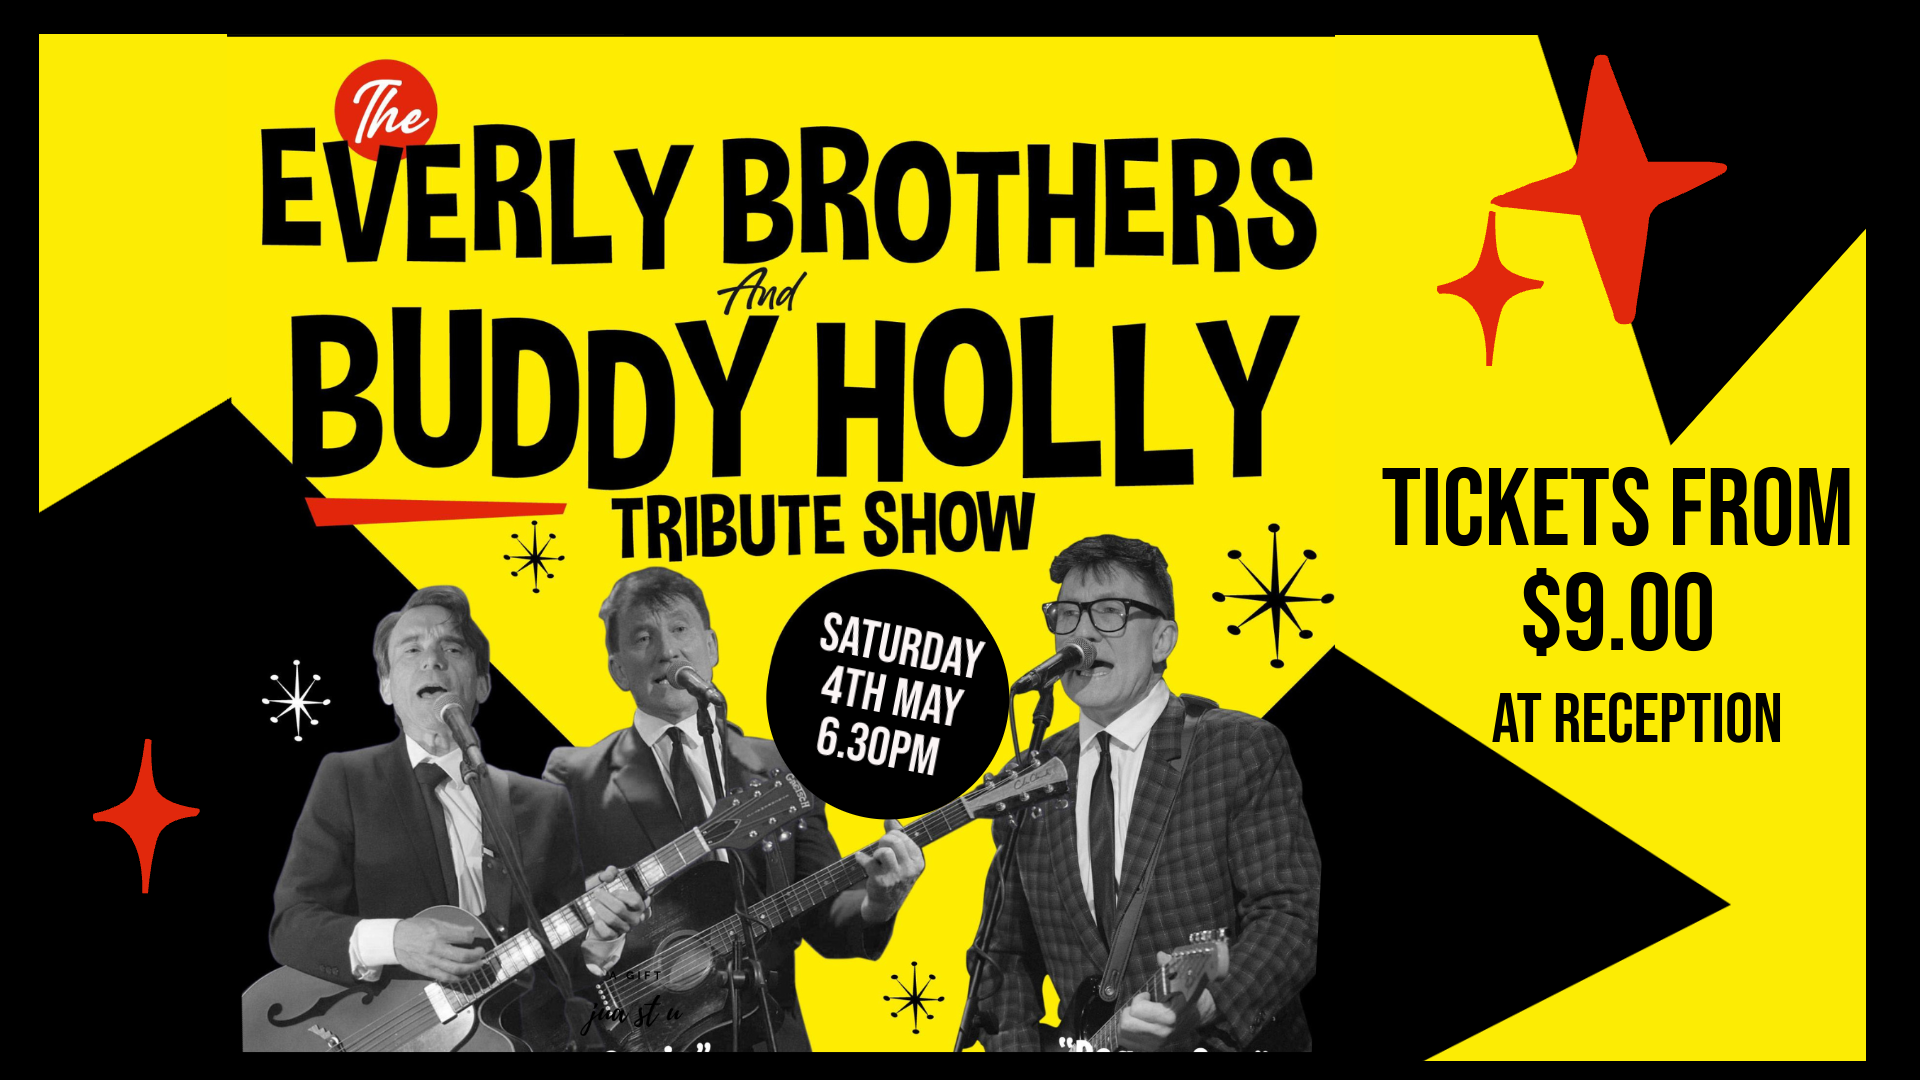 Buddy Holly nightlife